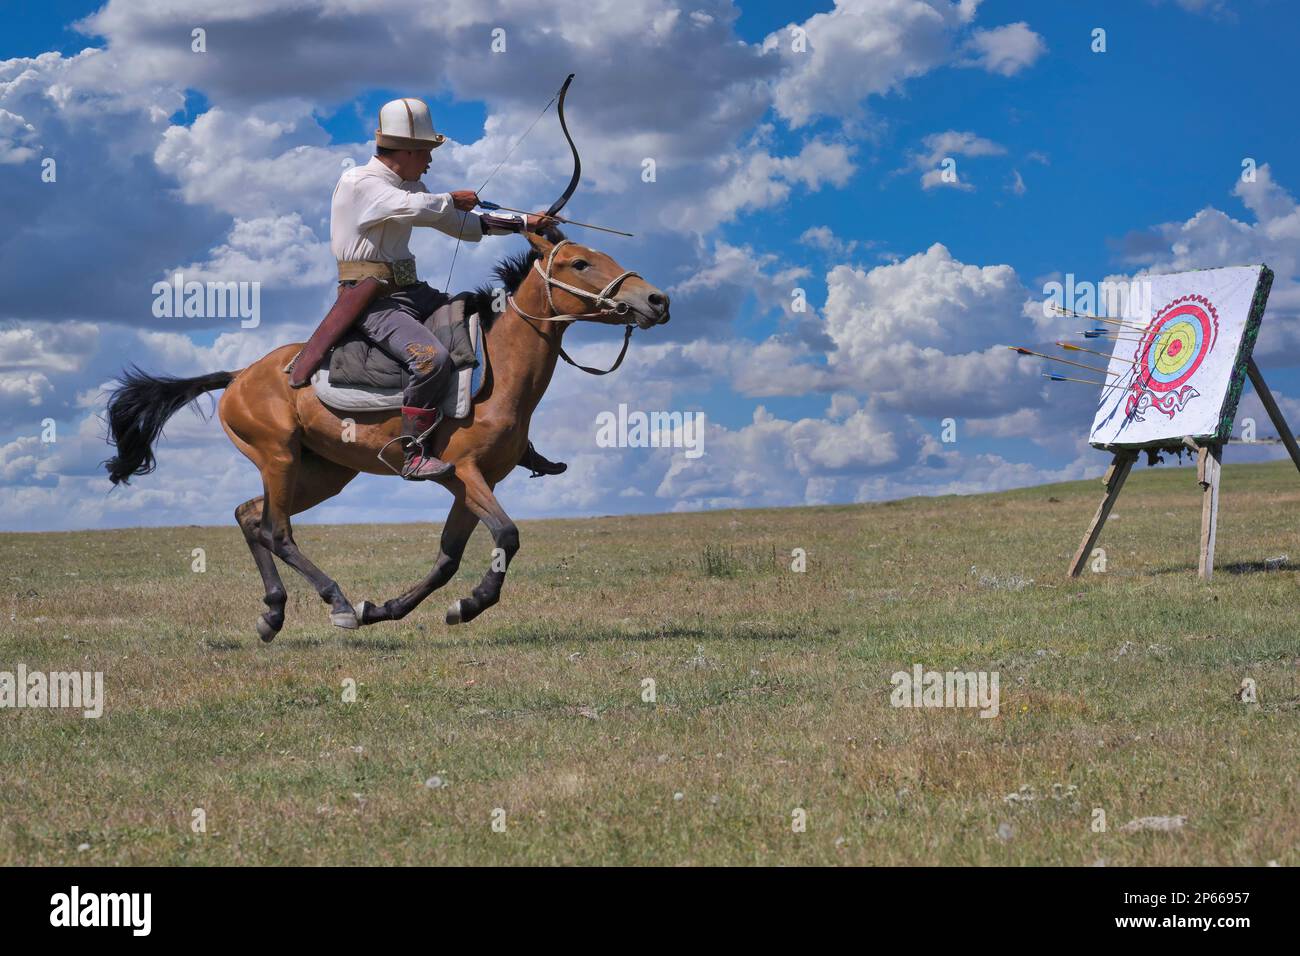 Le nomade kirghize a tiré des flèches sur une cible pendant le galop, lac Song Kol, région de Naryn, Kirghizistan, Asie centrale, Asie Banque D'Images